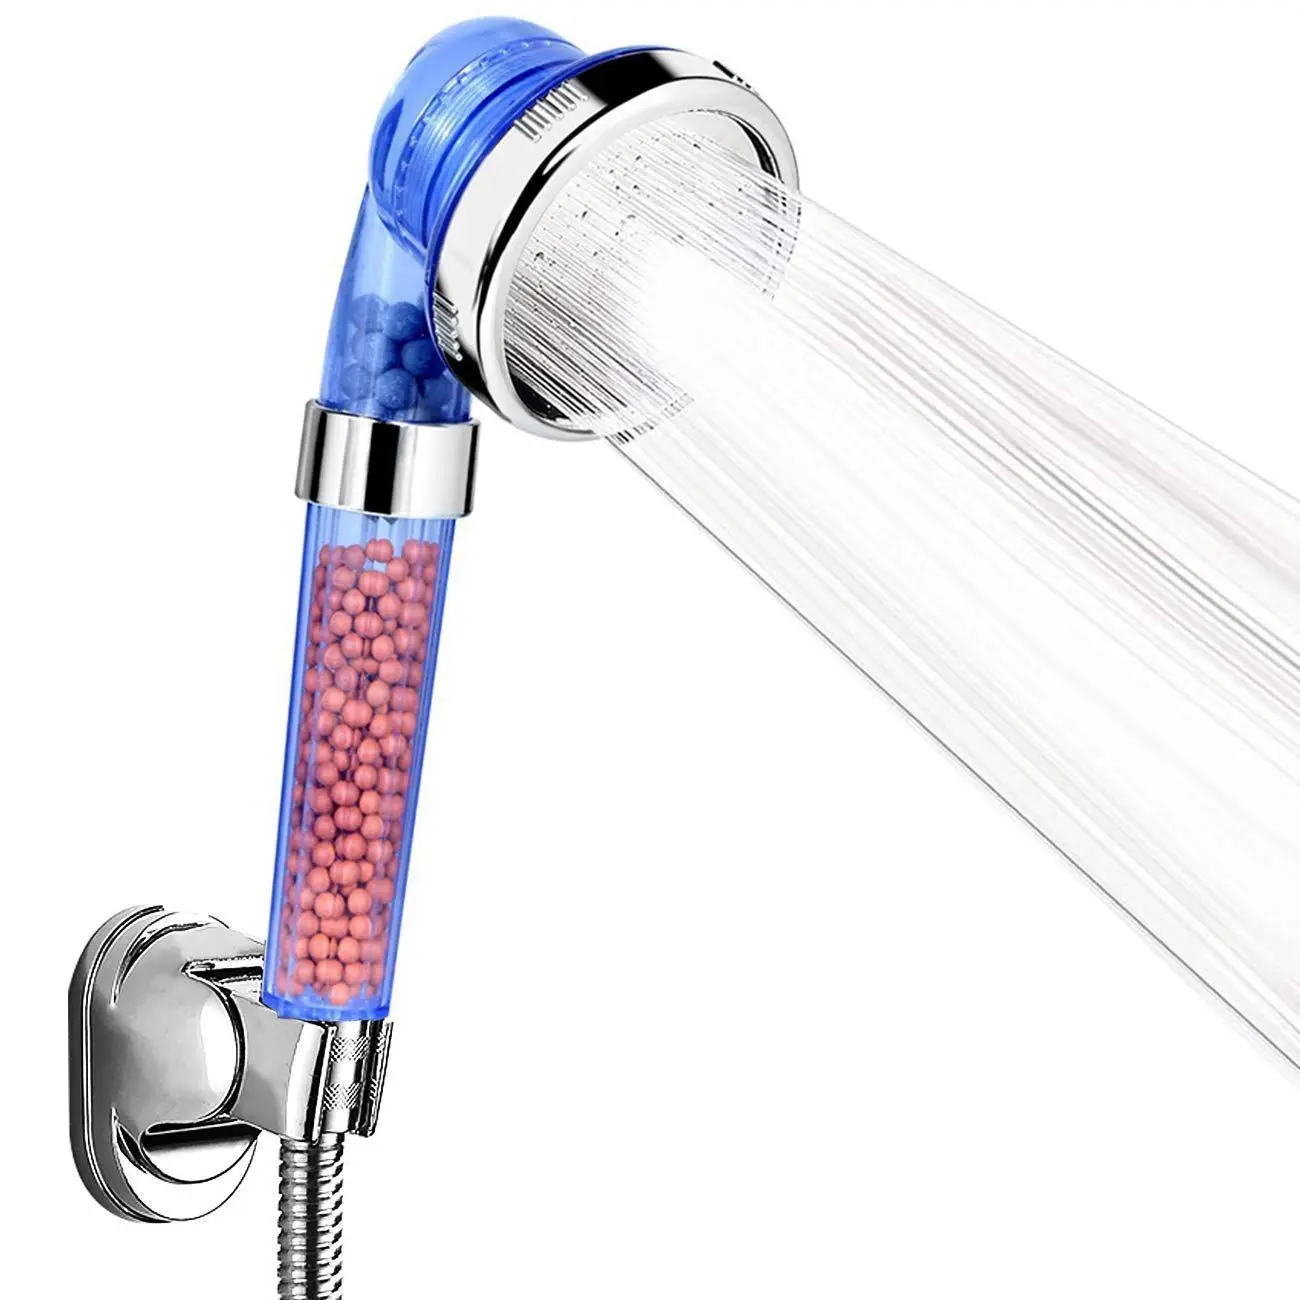 Ручной душ Универсальный Насадки для душа Компоненты 3-режимный ионной Премиум фильтр хлорки ручной душ с функцией экономии воды под высоким давлением спрей - Цвет: Blue